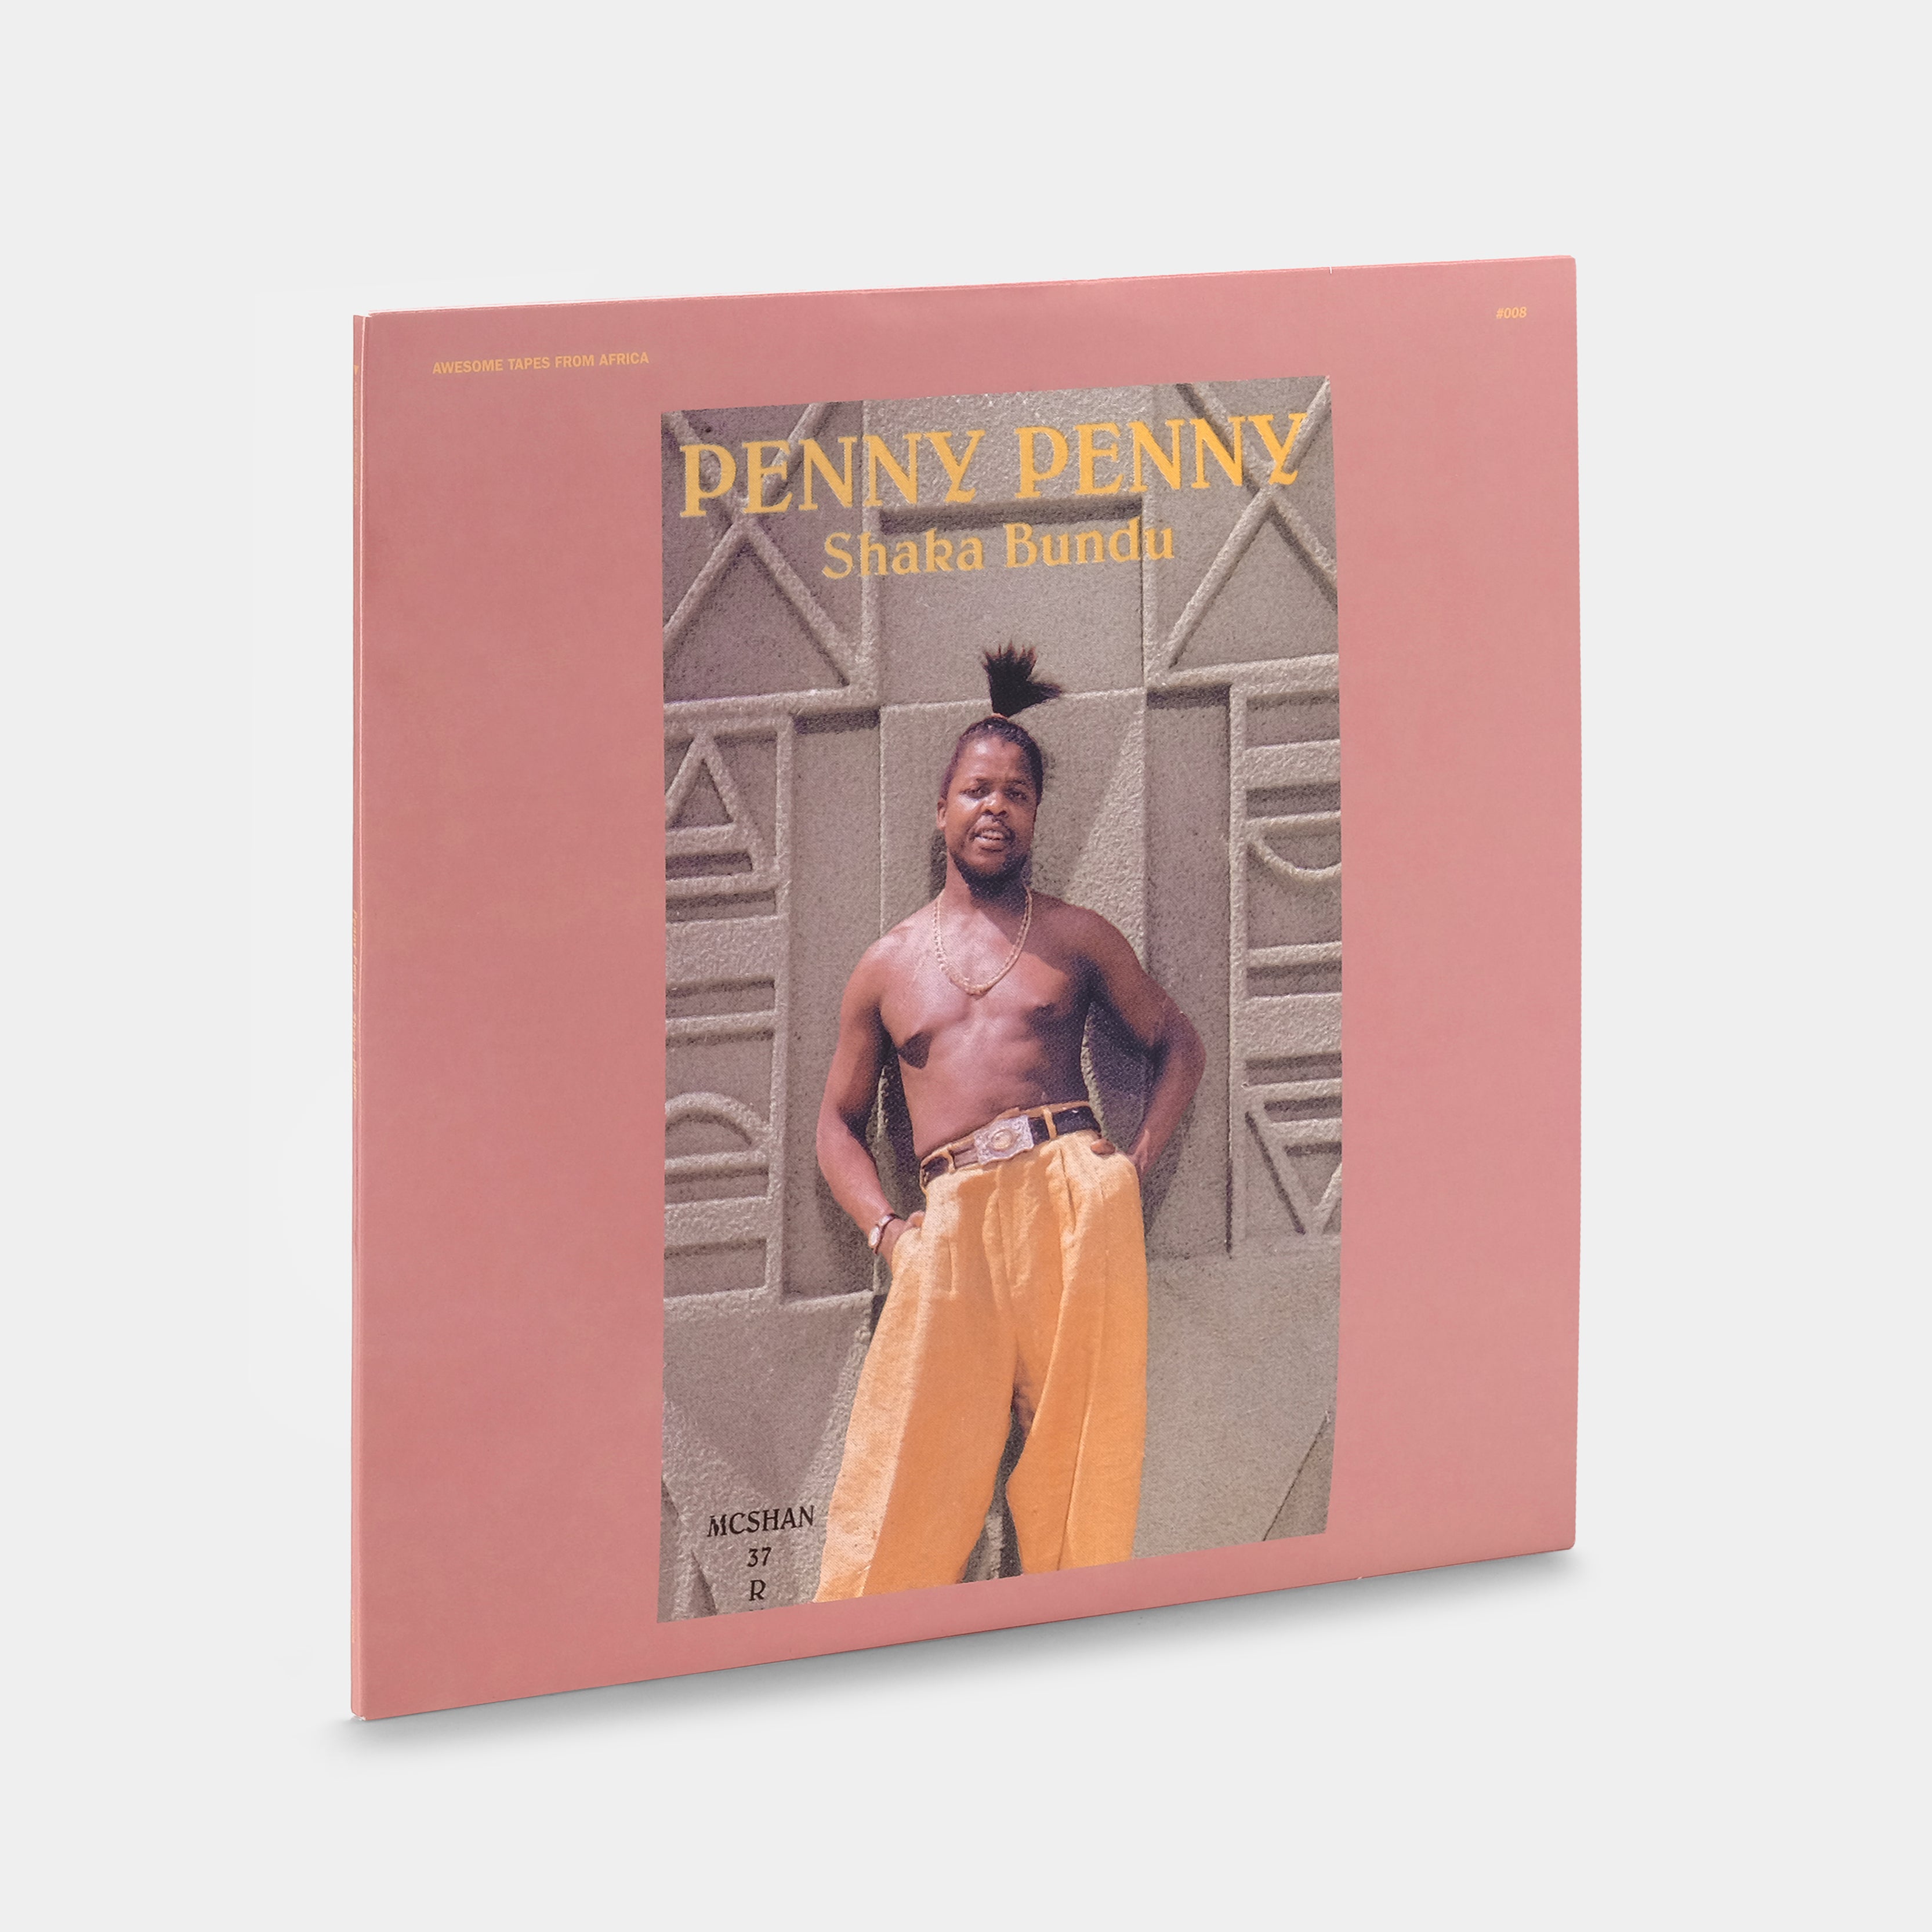 Penny Penny - Shaka Bundu 2xLP Vinyl Record